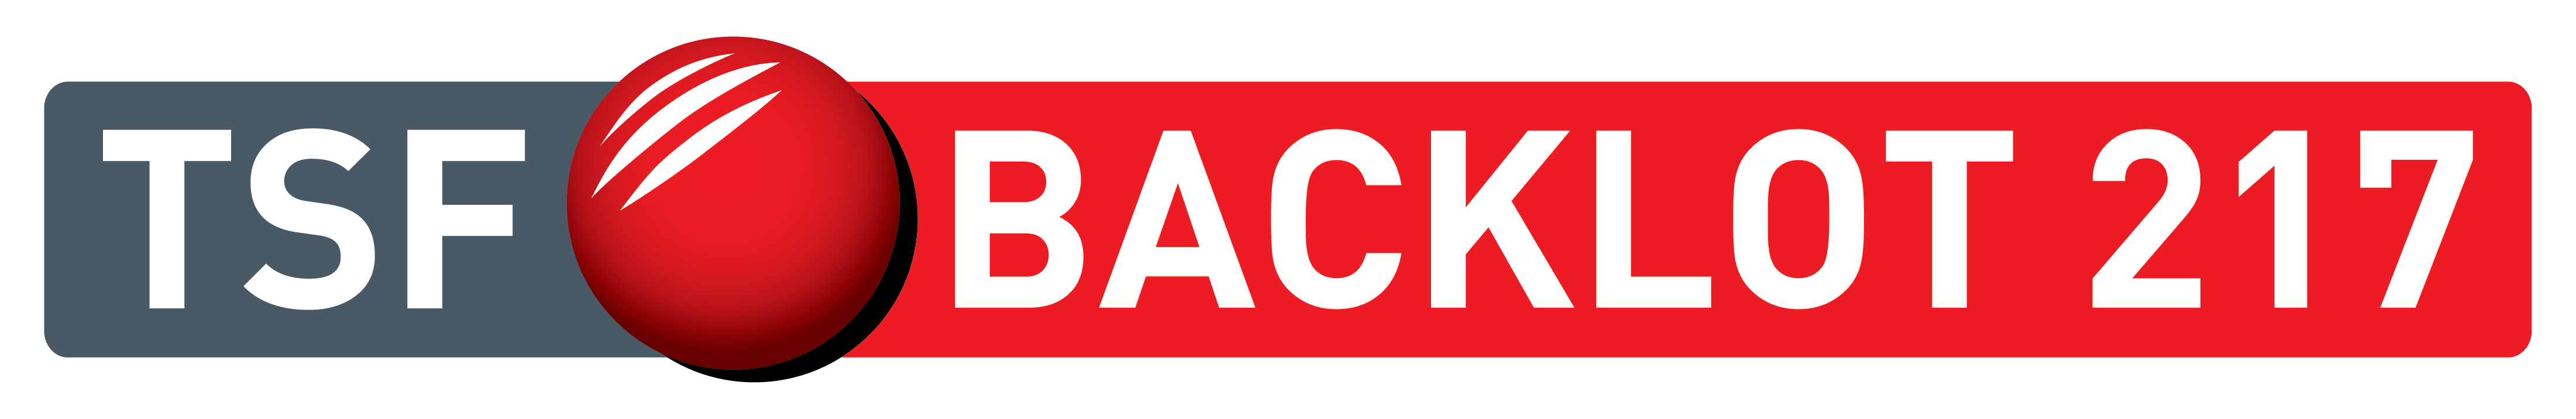 Logo TSF BACKLOT 217